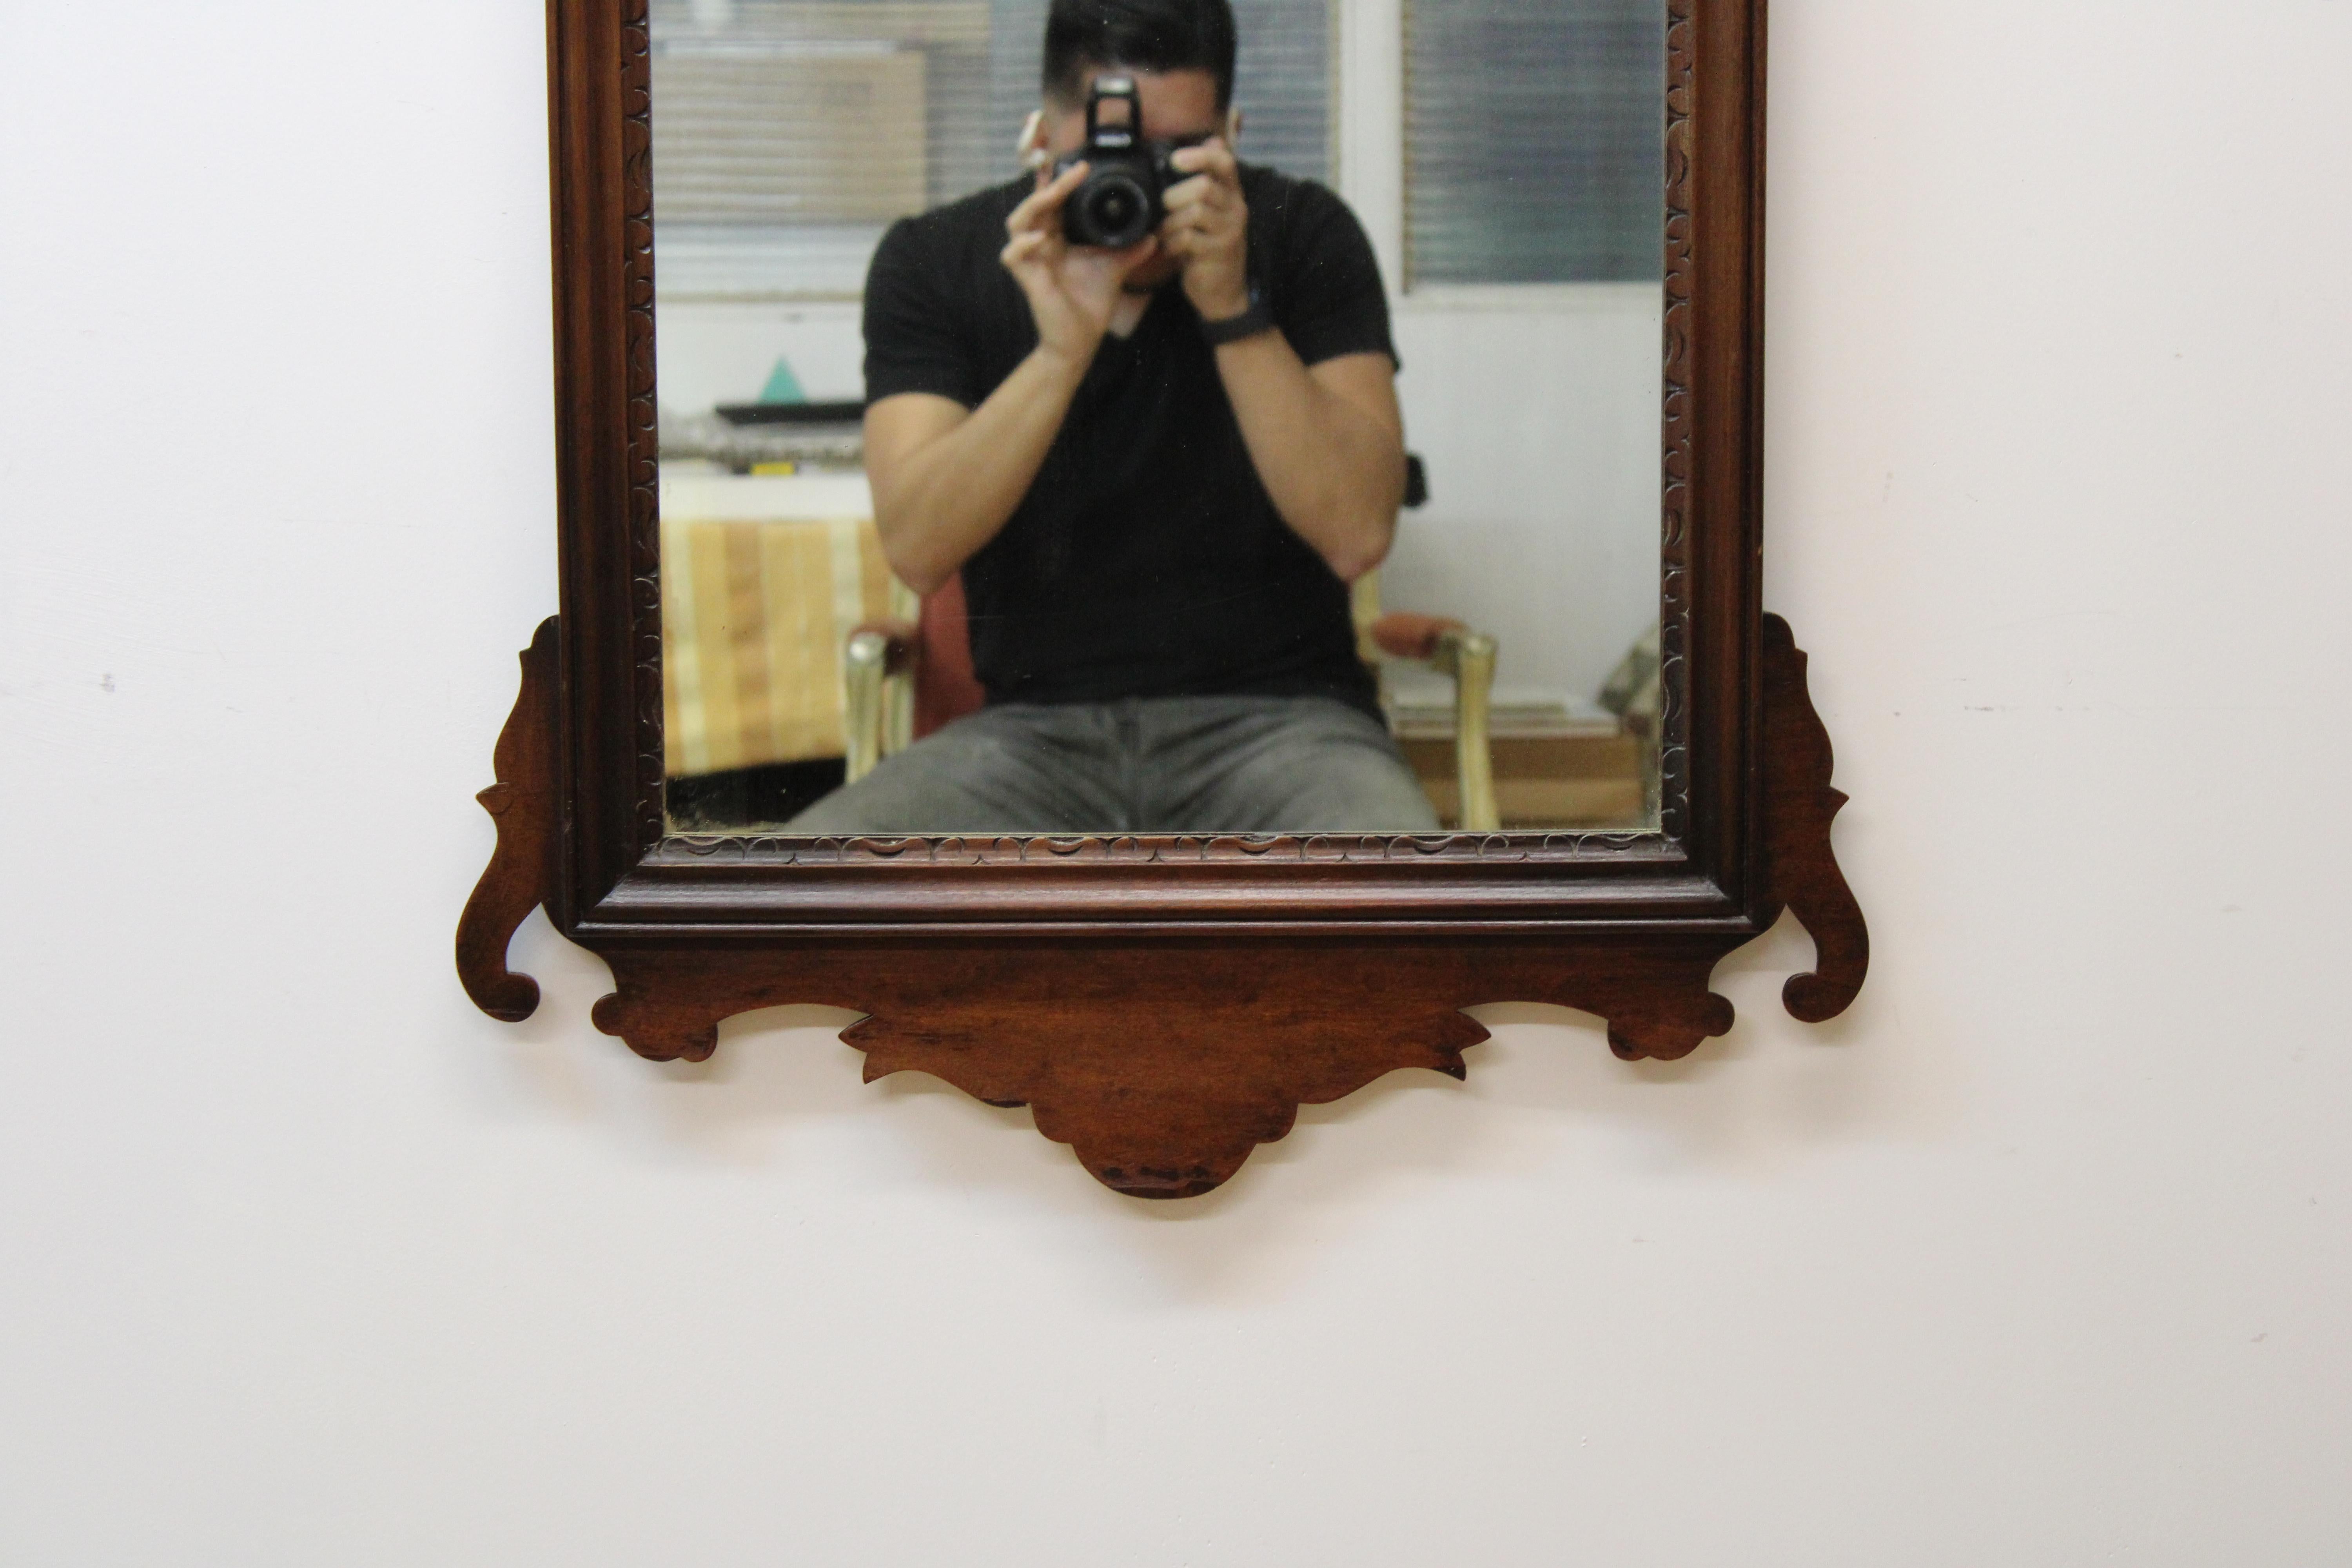 C. 19th century

Federal style walnut mirror.